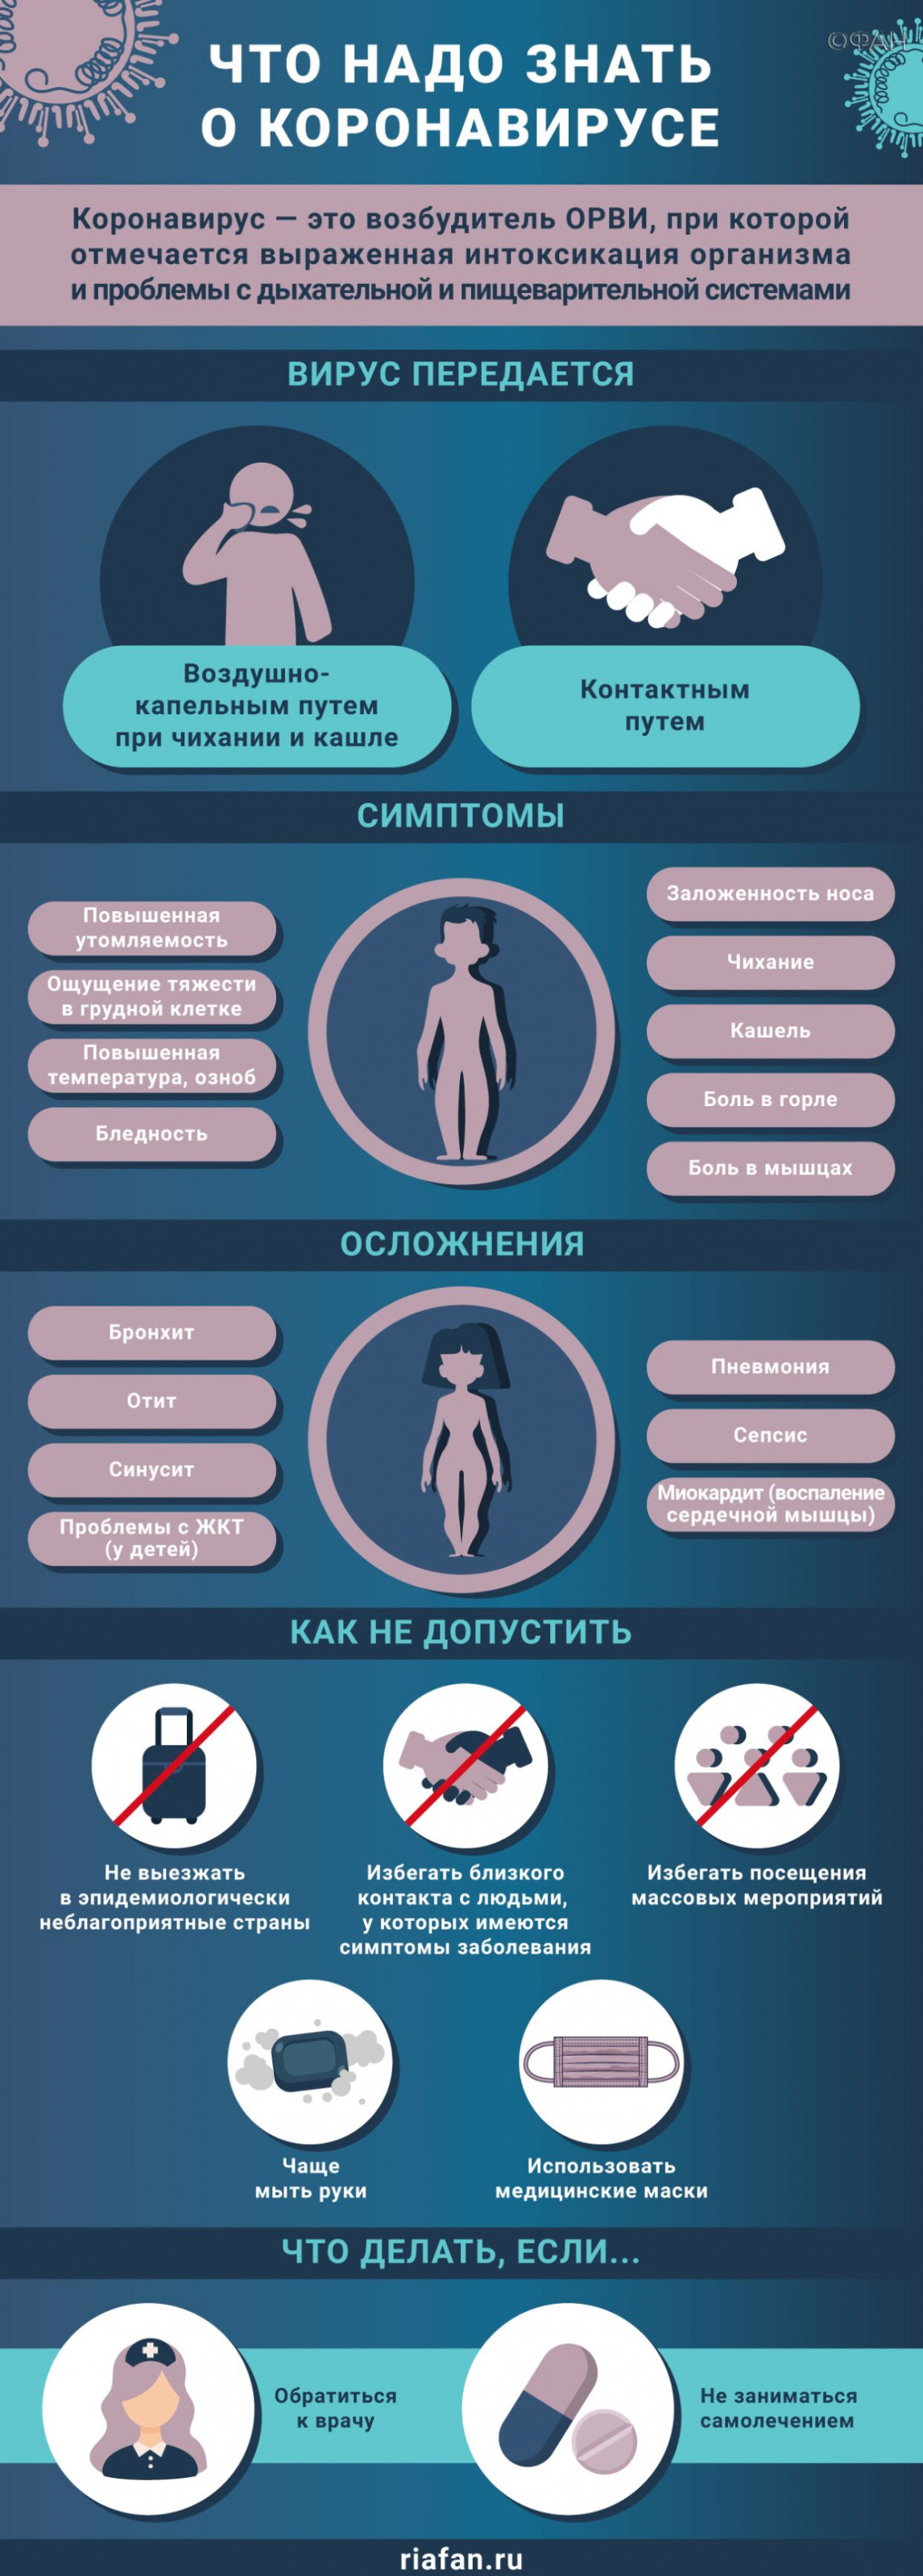 Врачи за сутки выявили 162 случая коронавируса в Петербурге